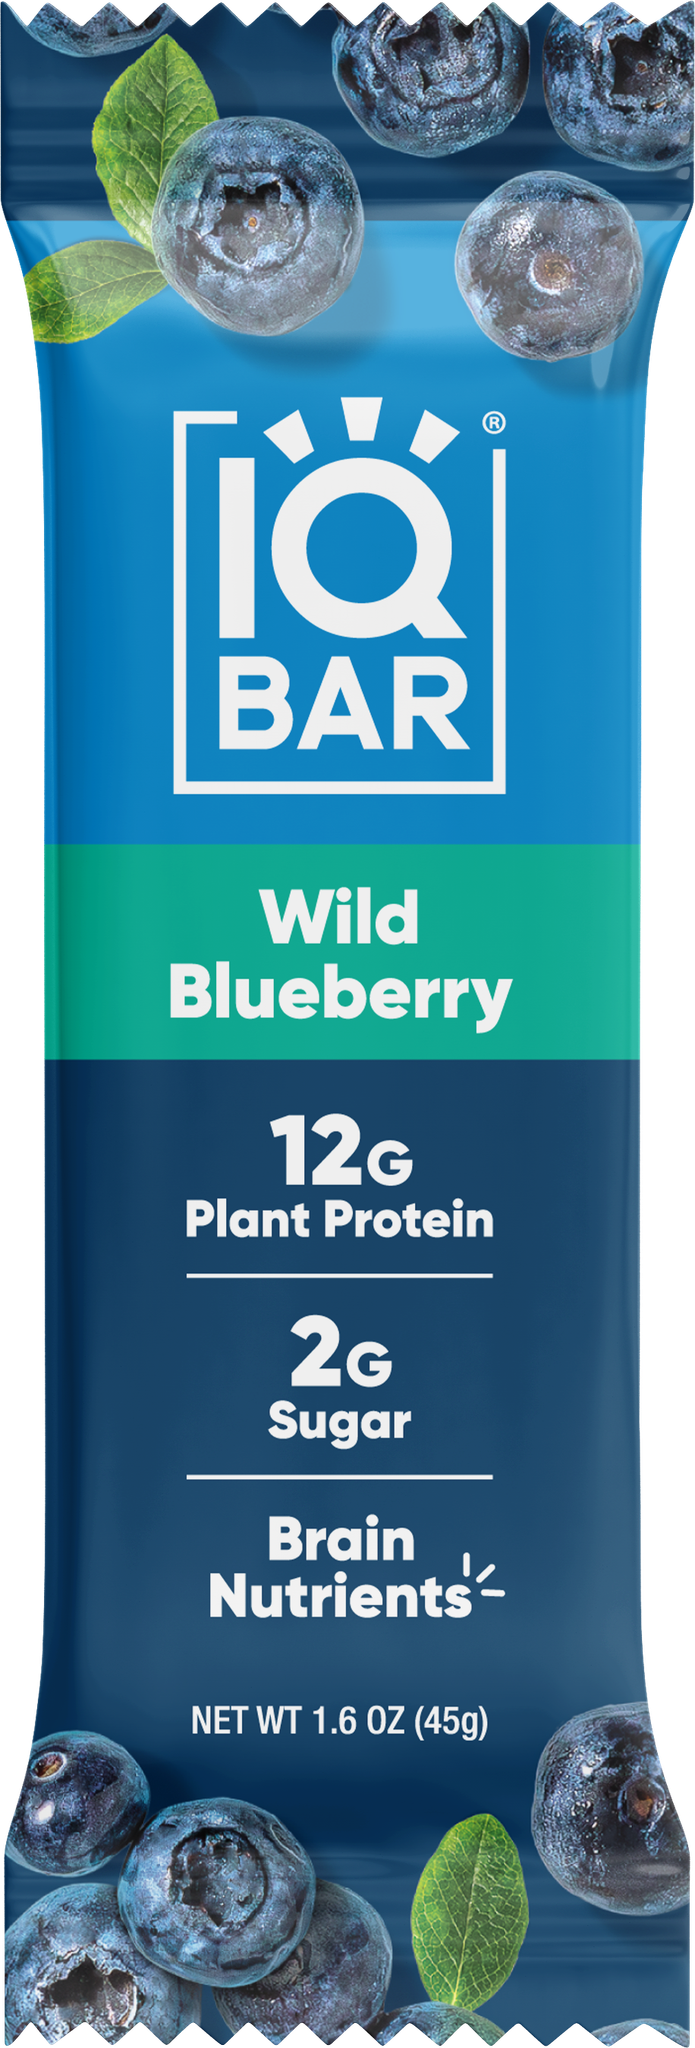 IQ Bar Wild Blueberry 45g